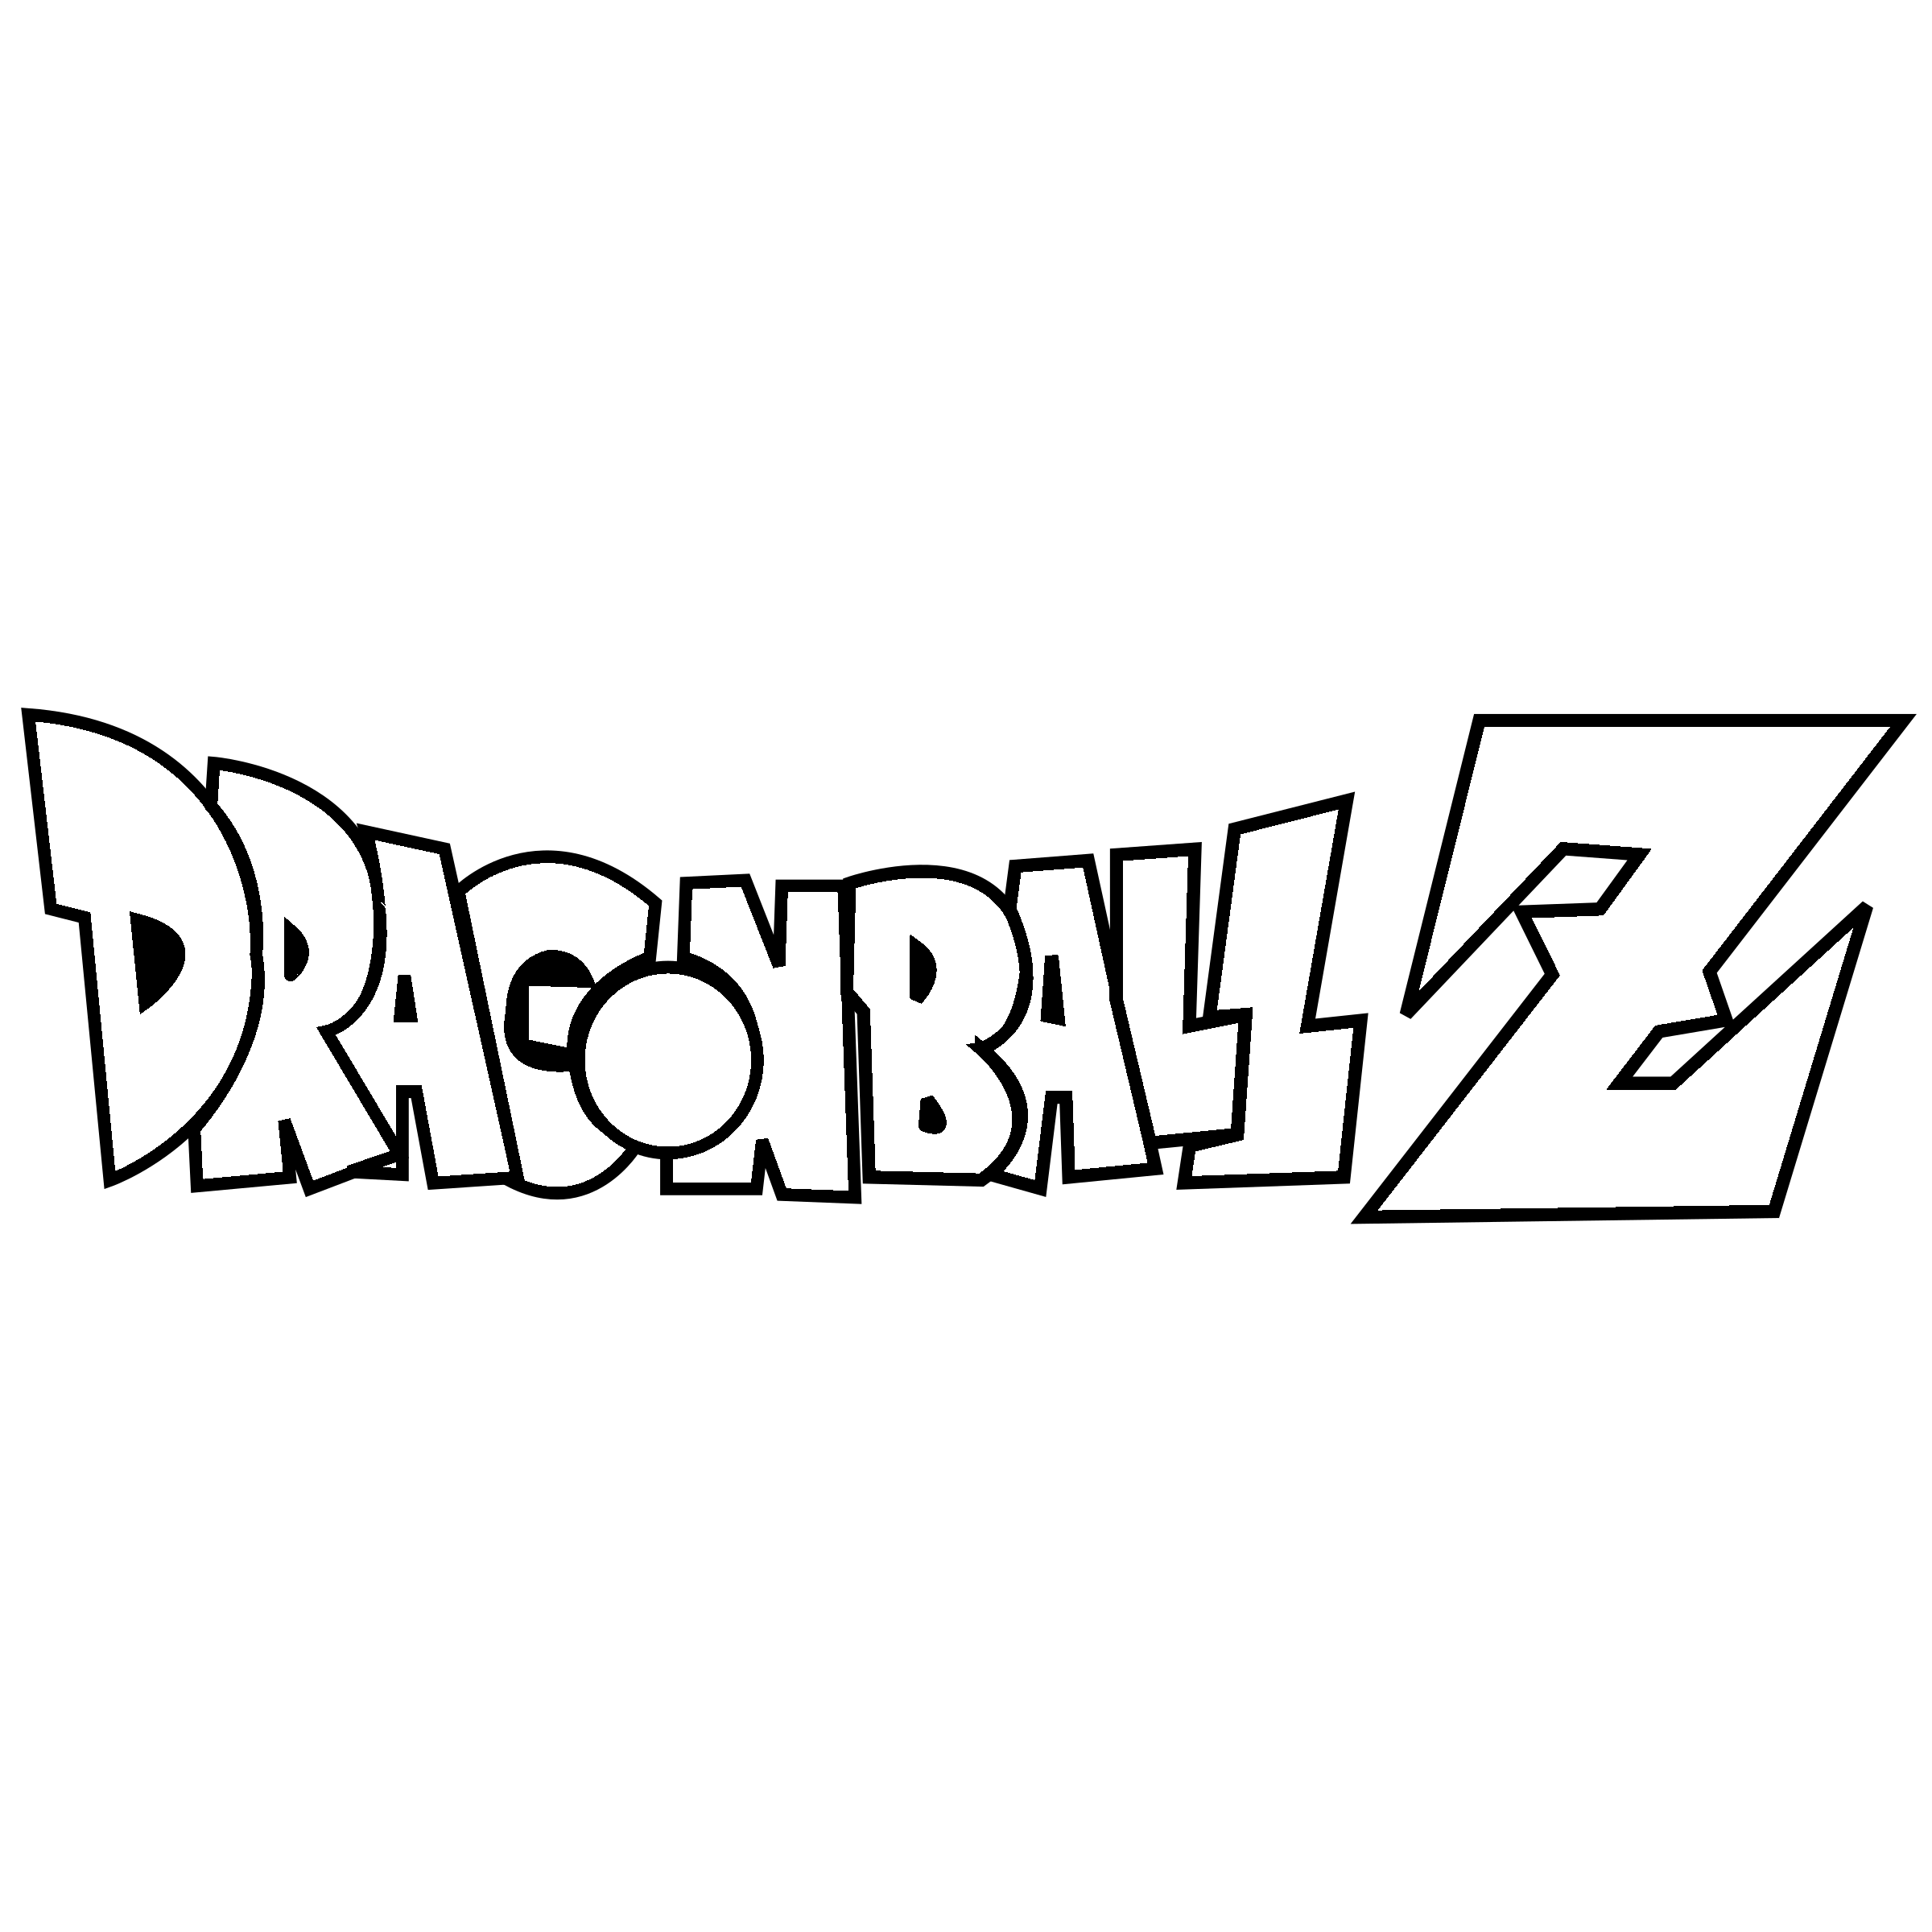 Dragon Ball Z Logo Vector at Vectorified.com | Collection of Dragon